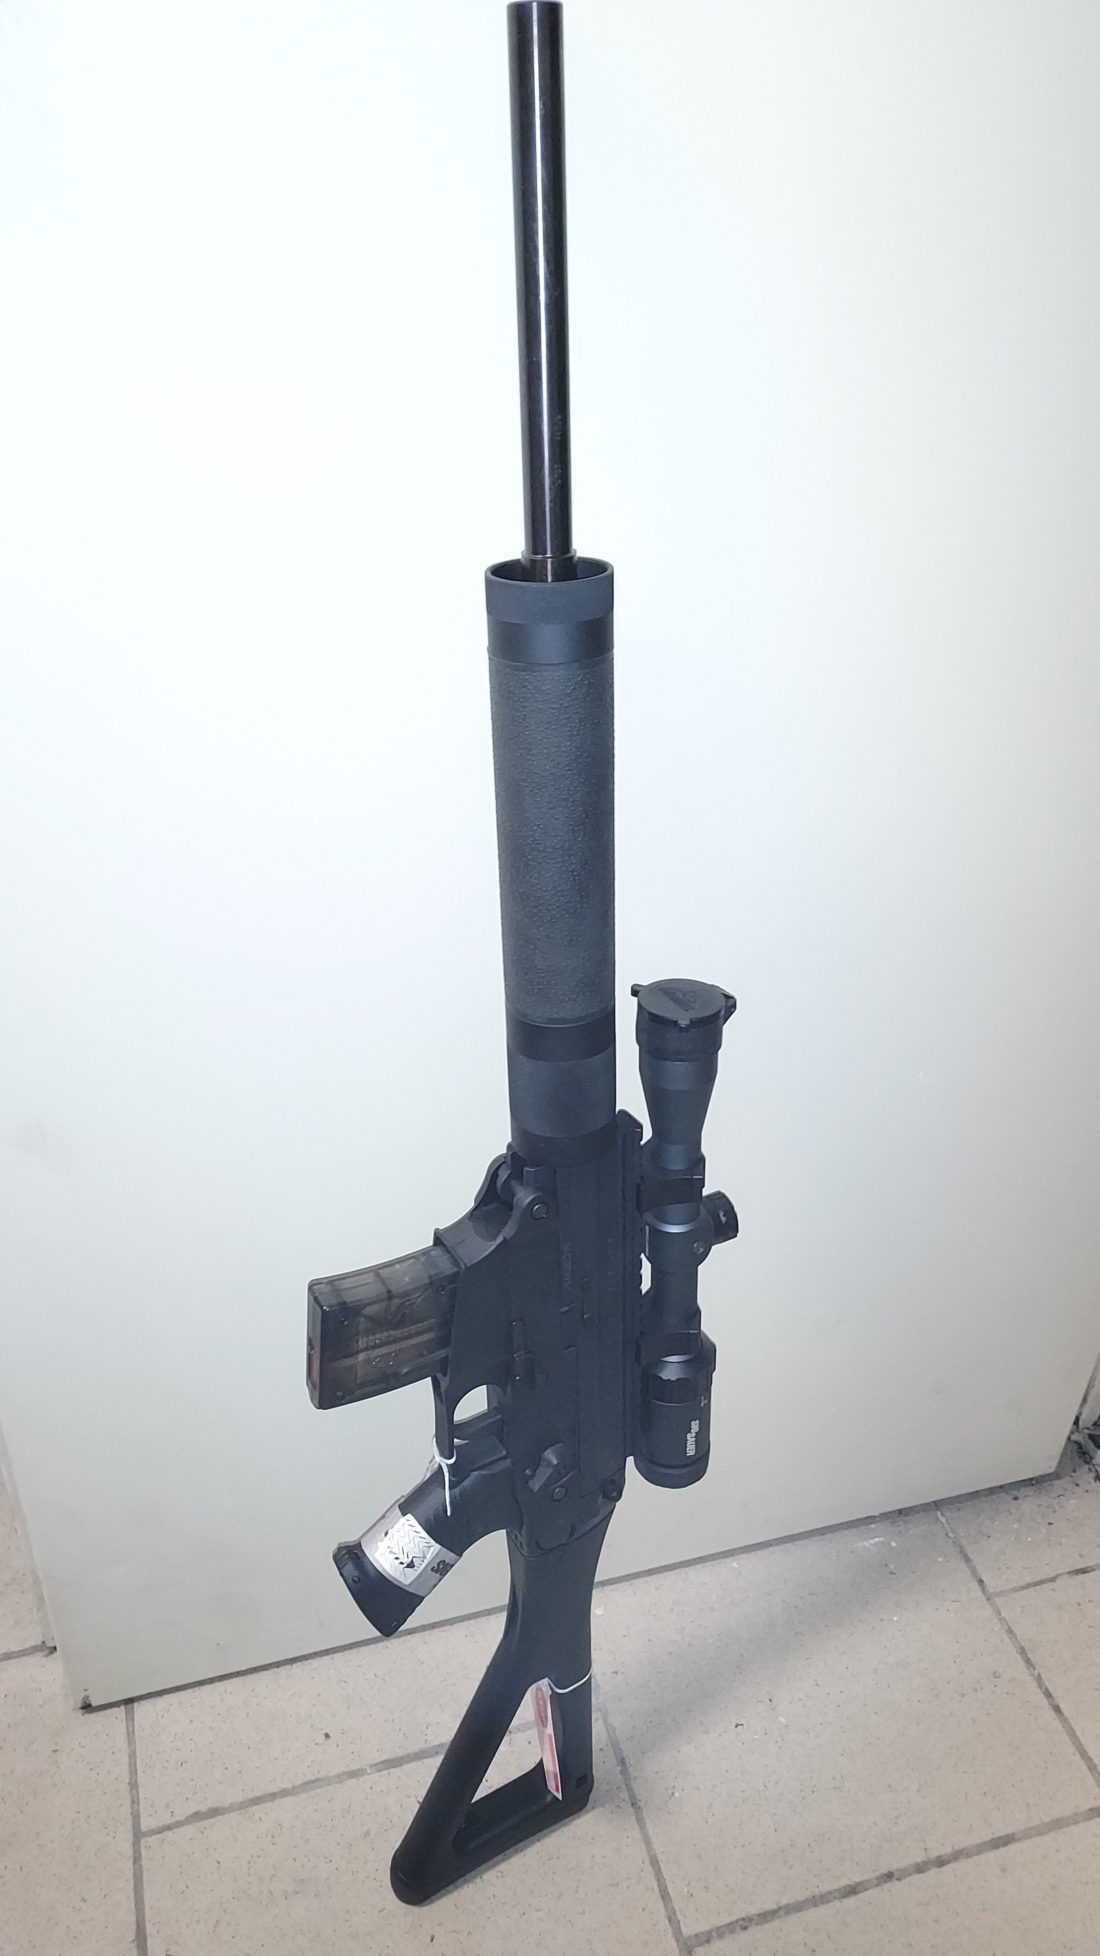 carabine semi automatique SIG SAUER modèle 522 HB TARGET, calibre .22 Long Rifle